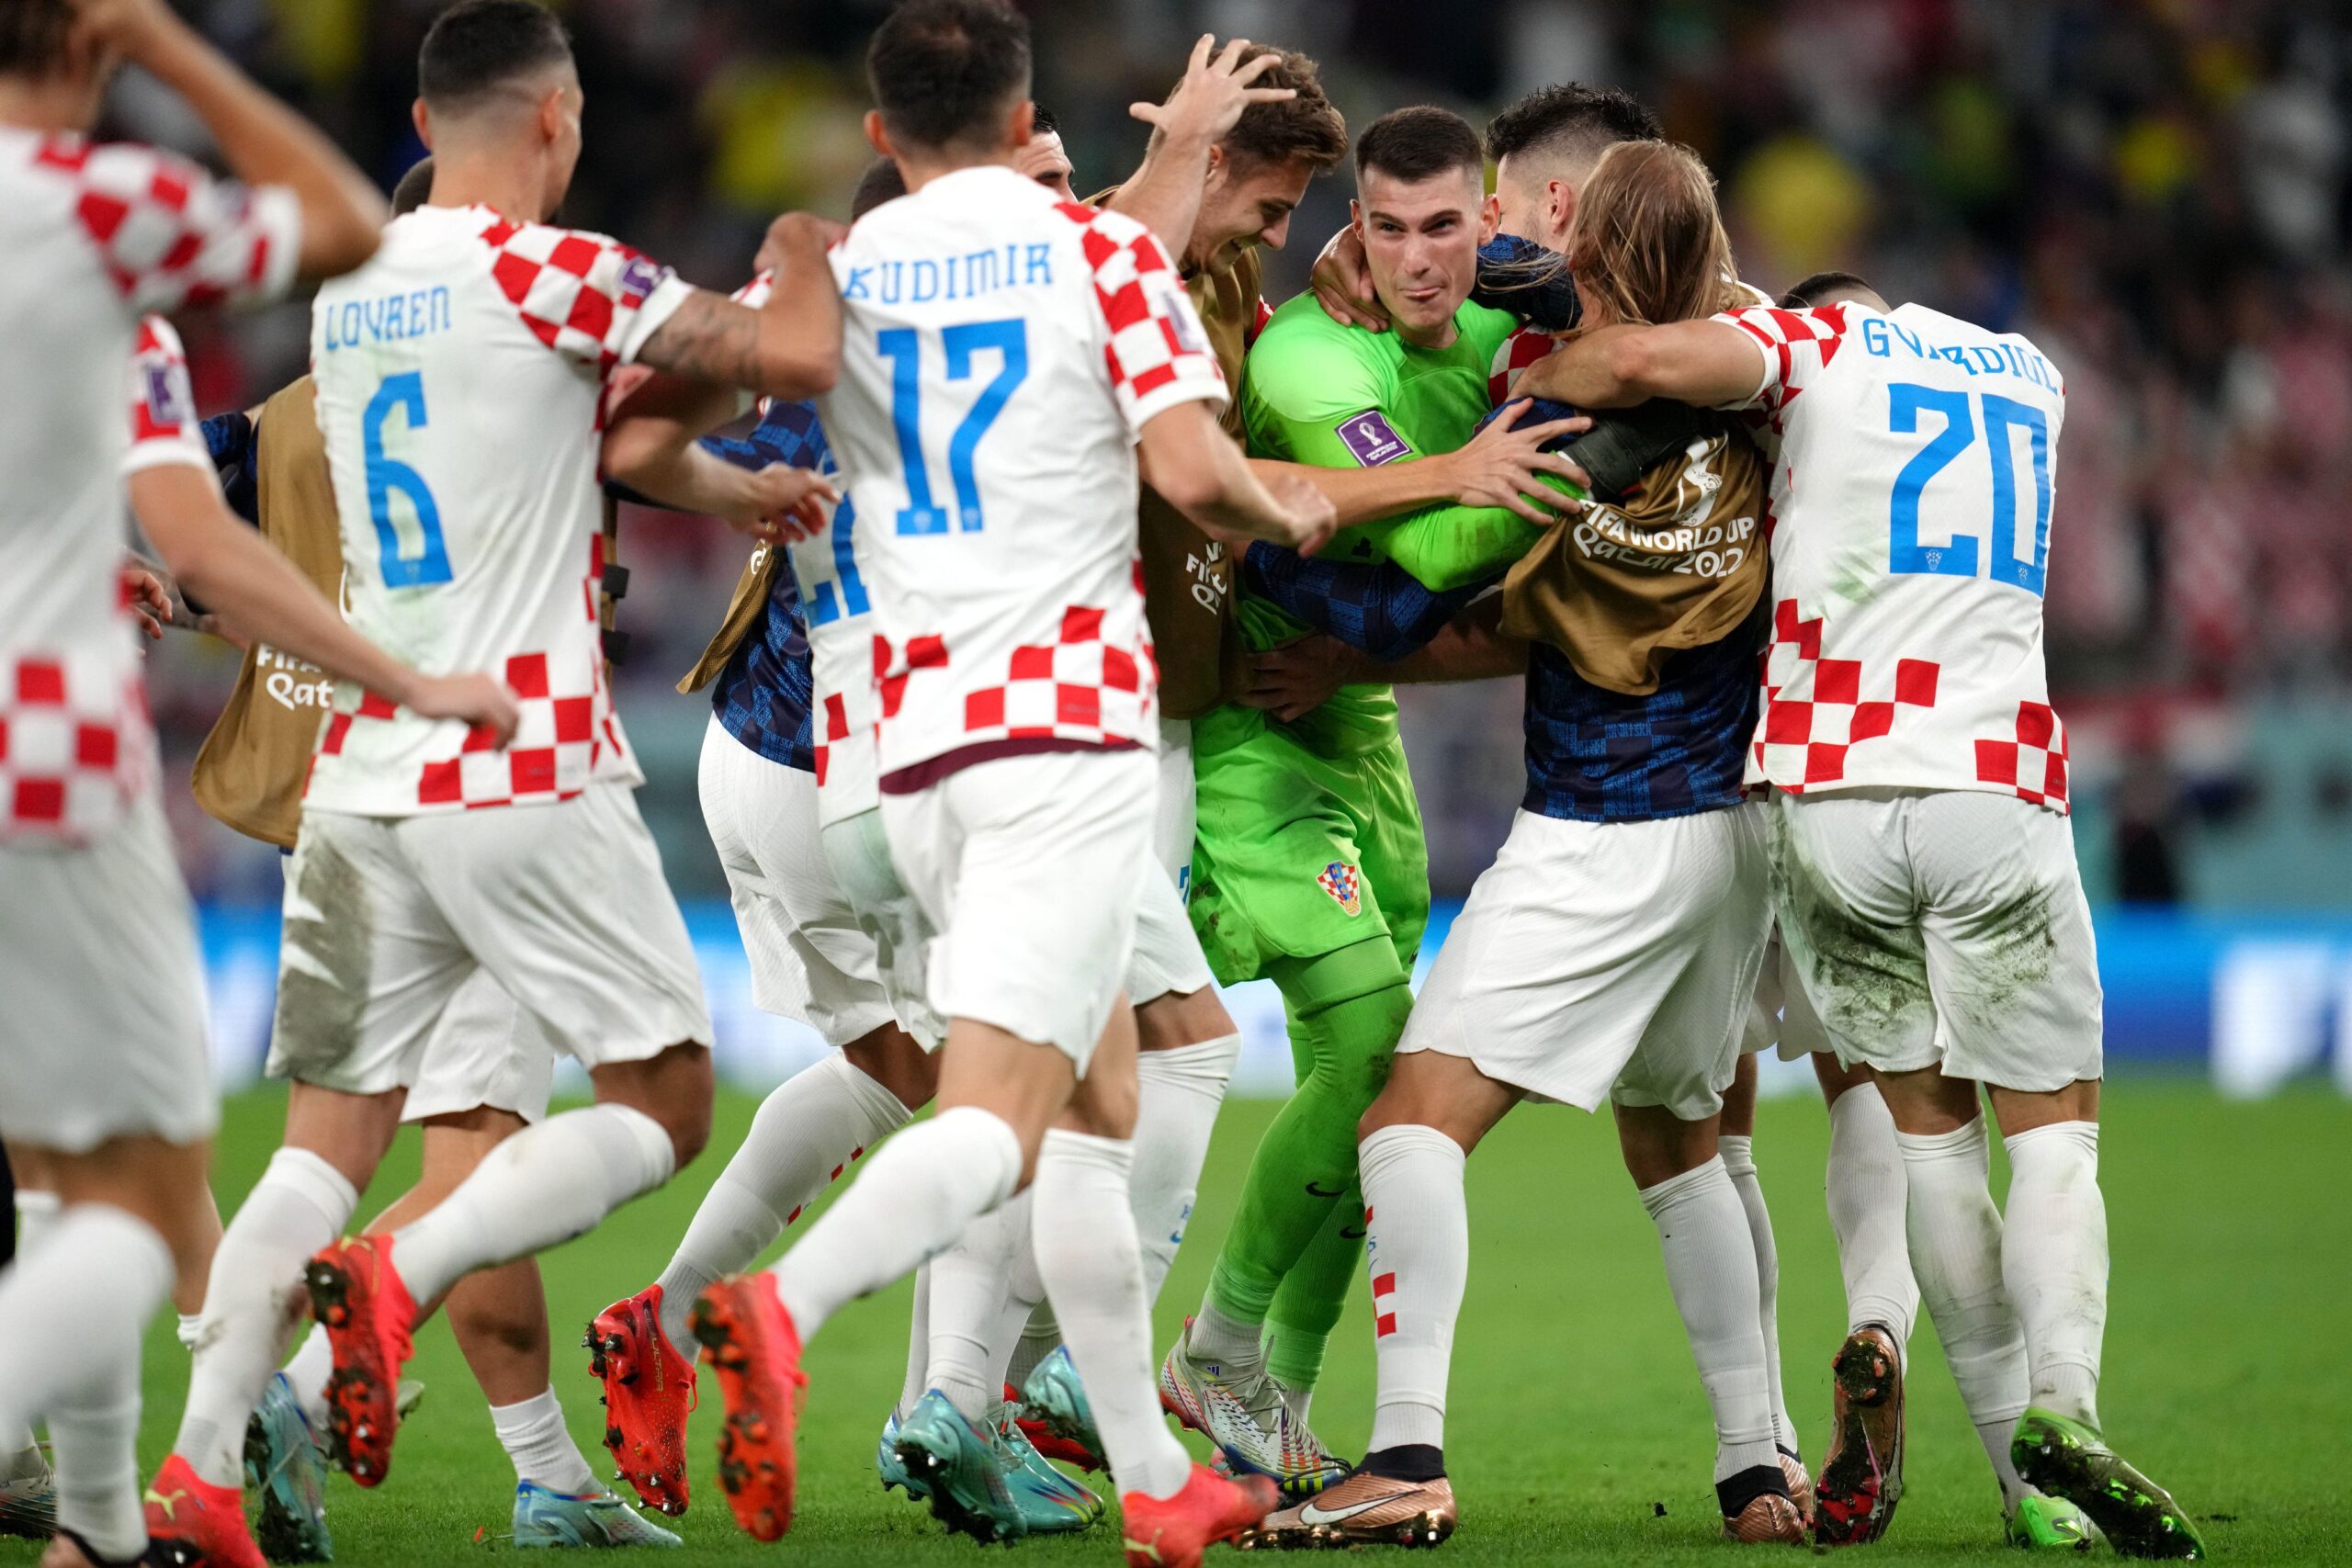 فرحة لاعبي كرواتيا بالحارس دومينيك ليفاكوفتش، الذي صد ركلة رودريغو، حيث انتهت الركلات بنتيجة 4-2 لكرواتيا.